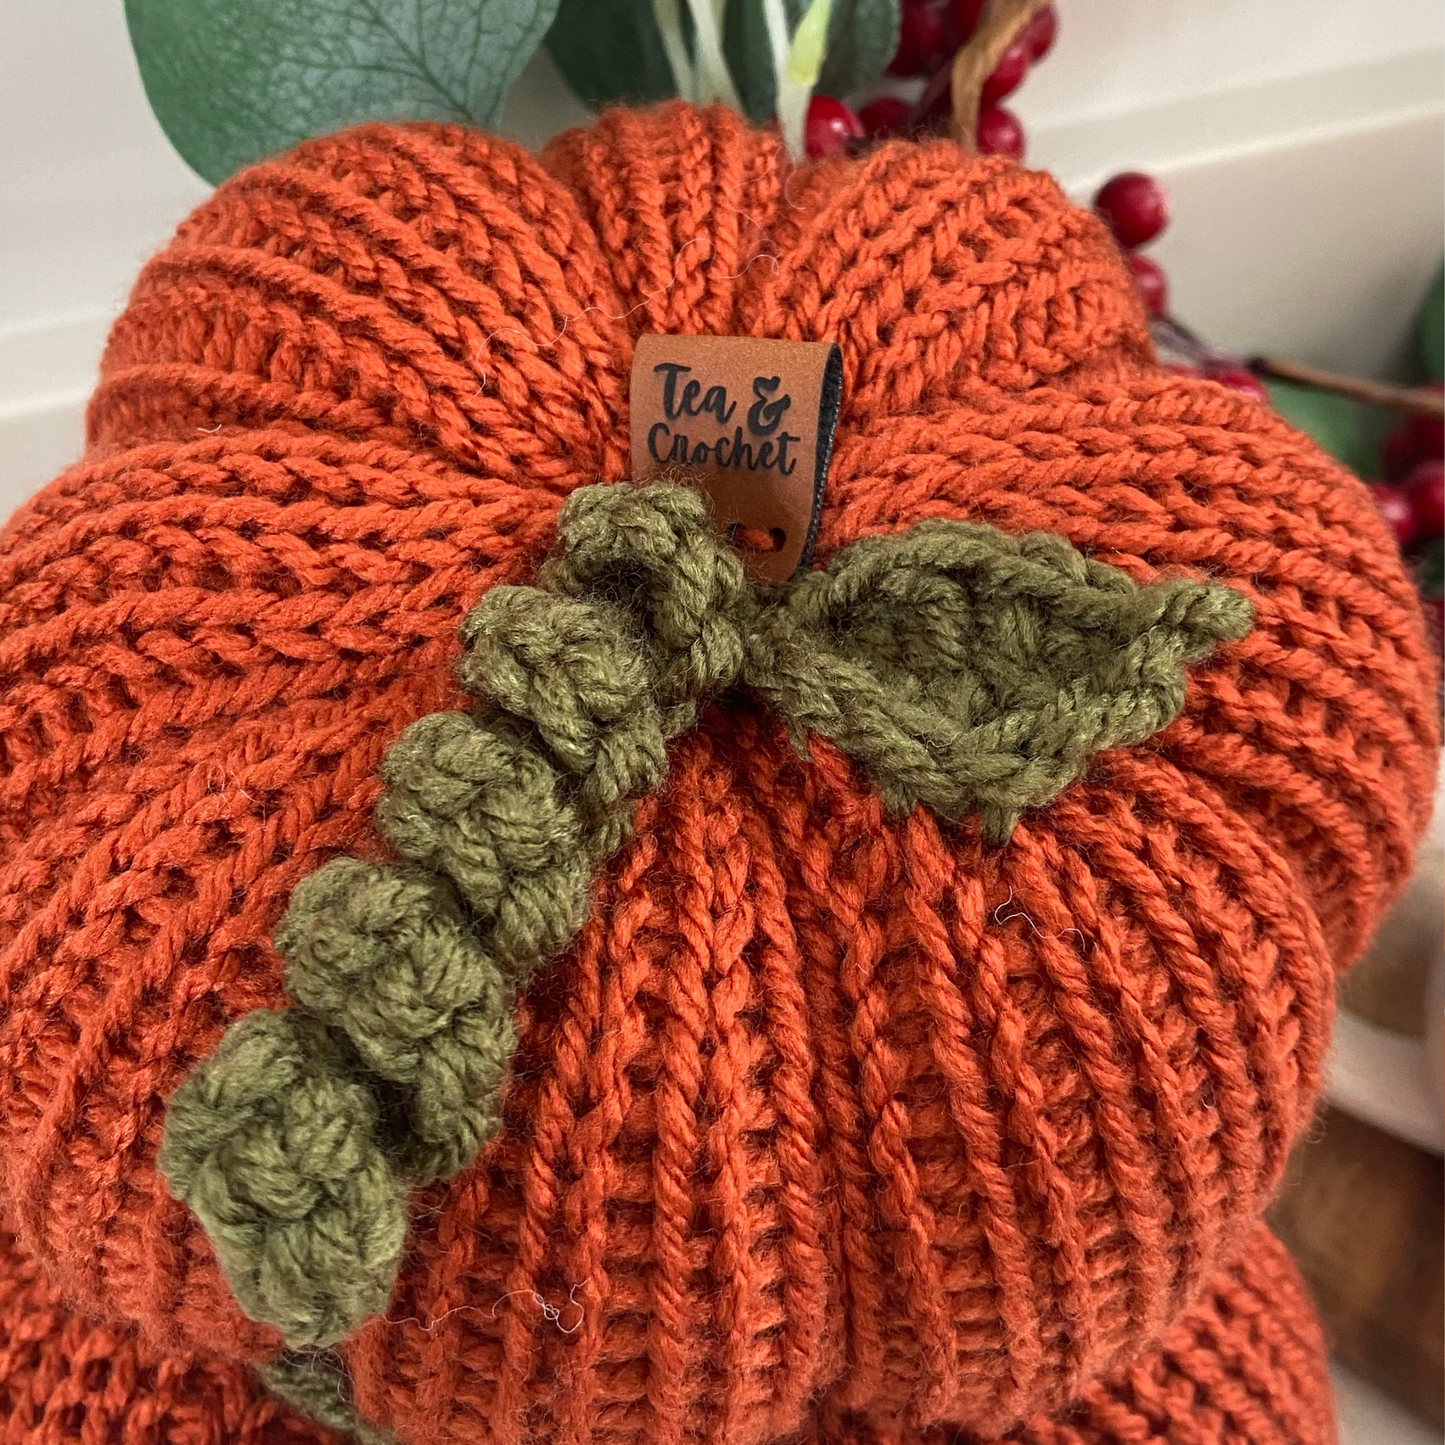 Pumpkin decorations